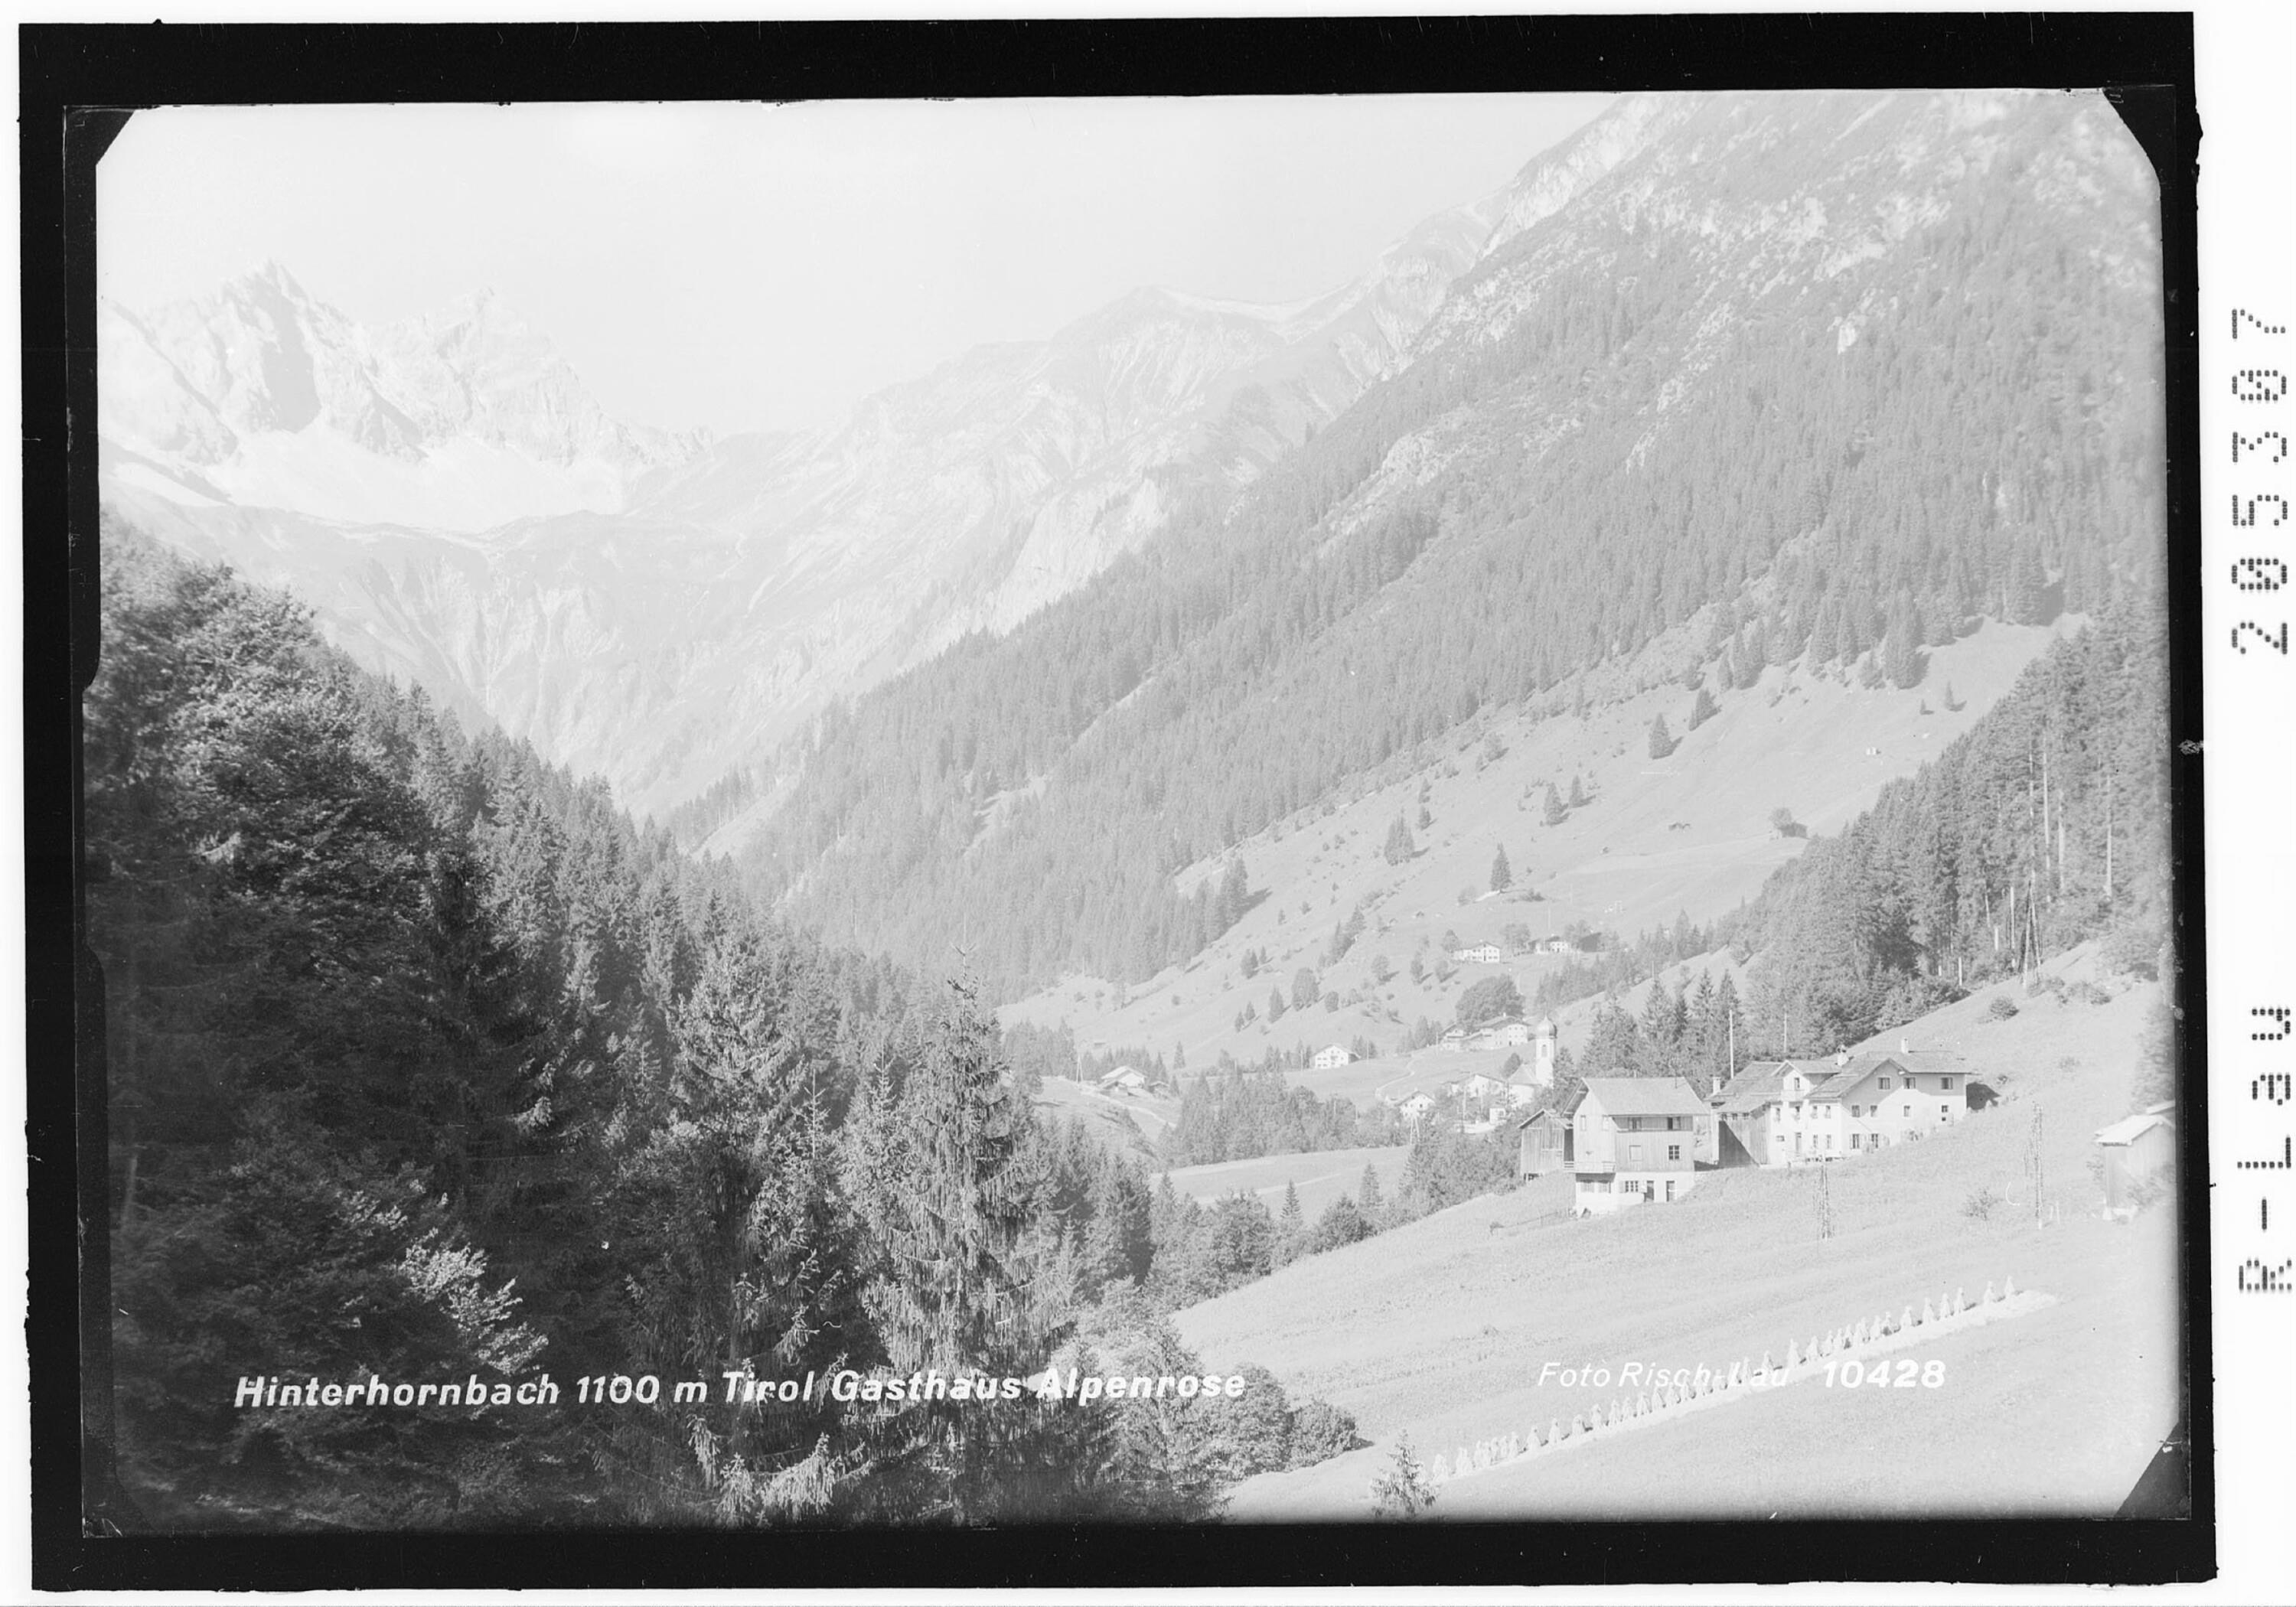 Hinterhornbach 1100 m Tirol Gasthaus Alpenrose></div>


    <hr>
    <div class=